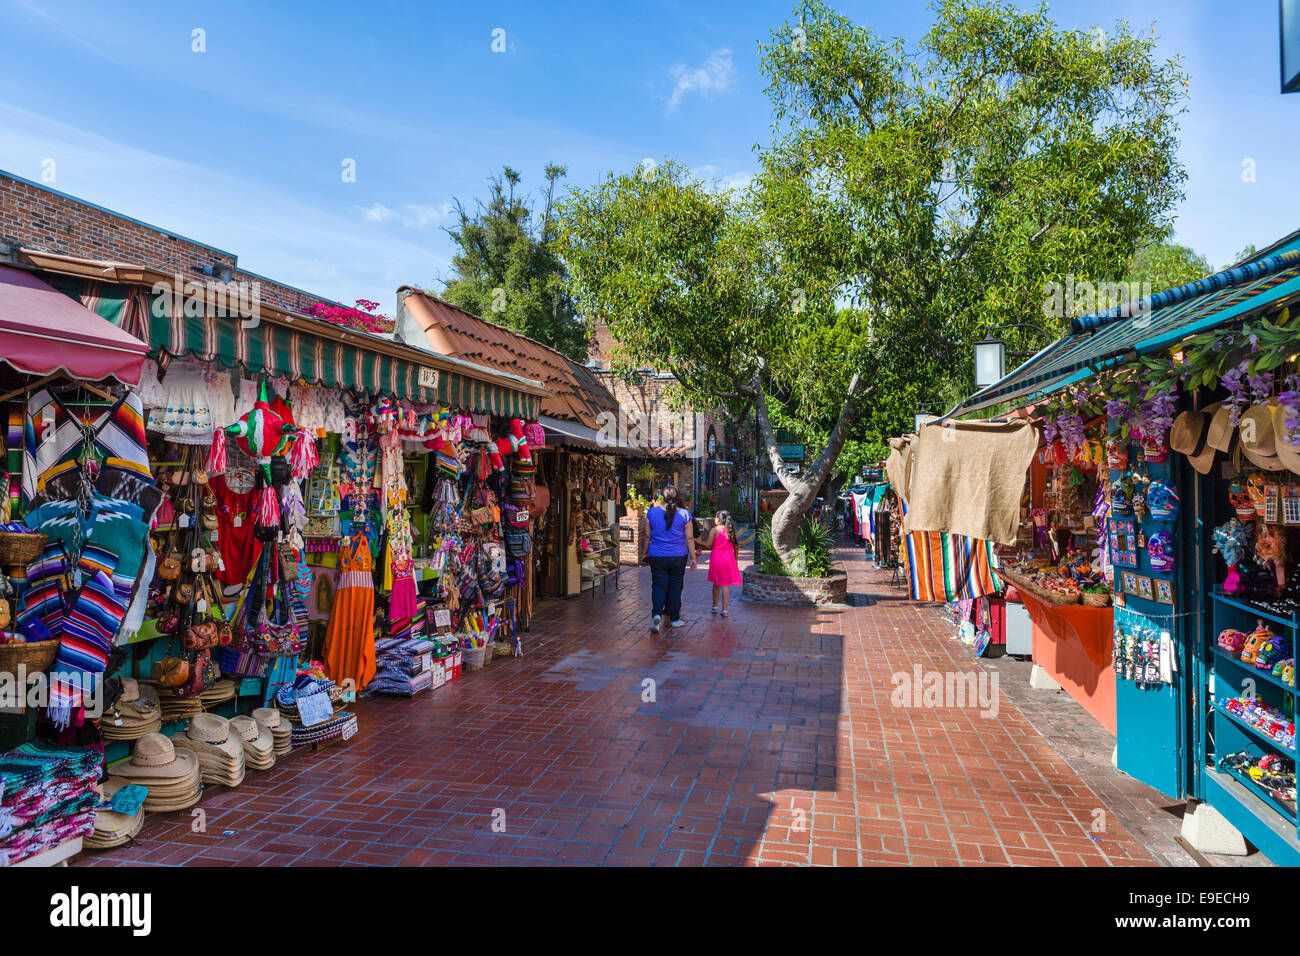 Tiendas y cabinas de mercado en Olvera Street en el distrito histórico de la Plaza de Los Angeles, Los Angeles, California, EE.UU. Foto de stock